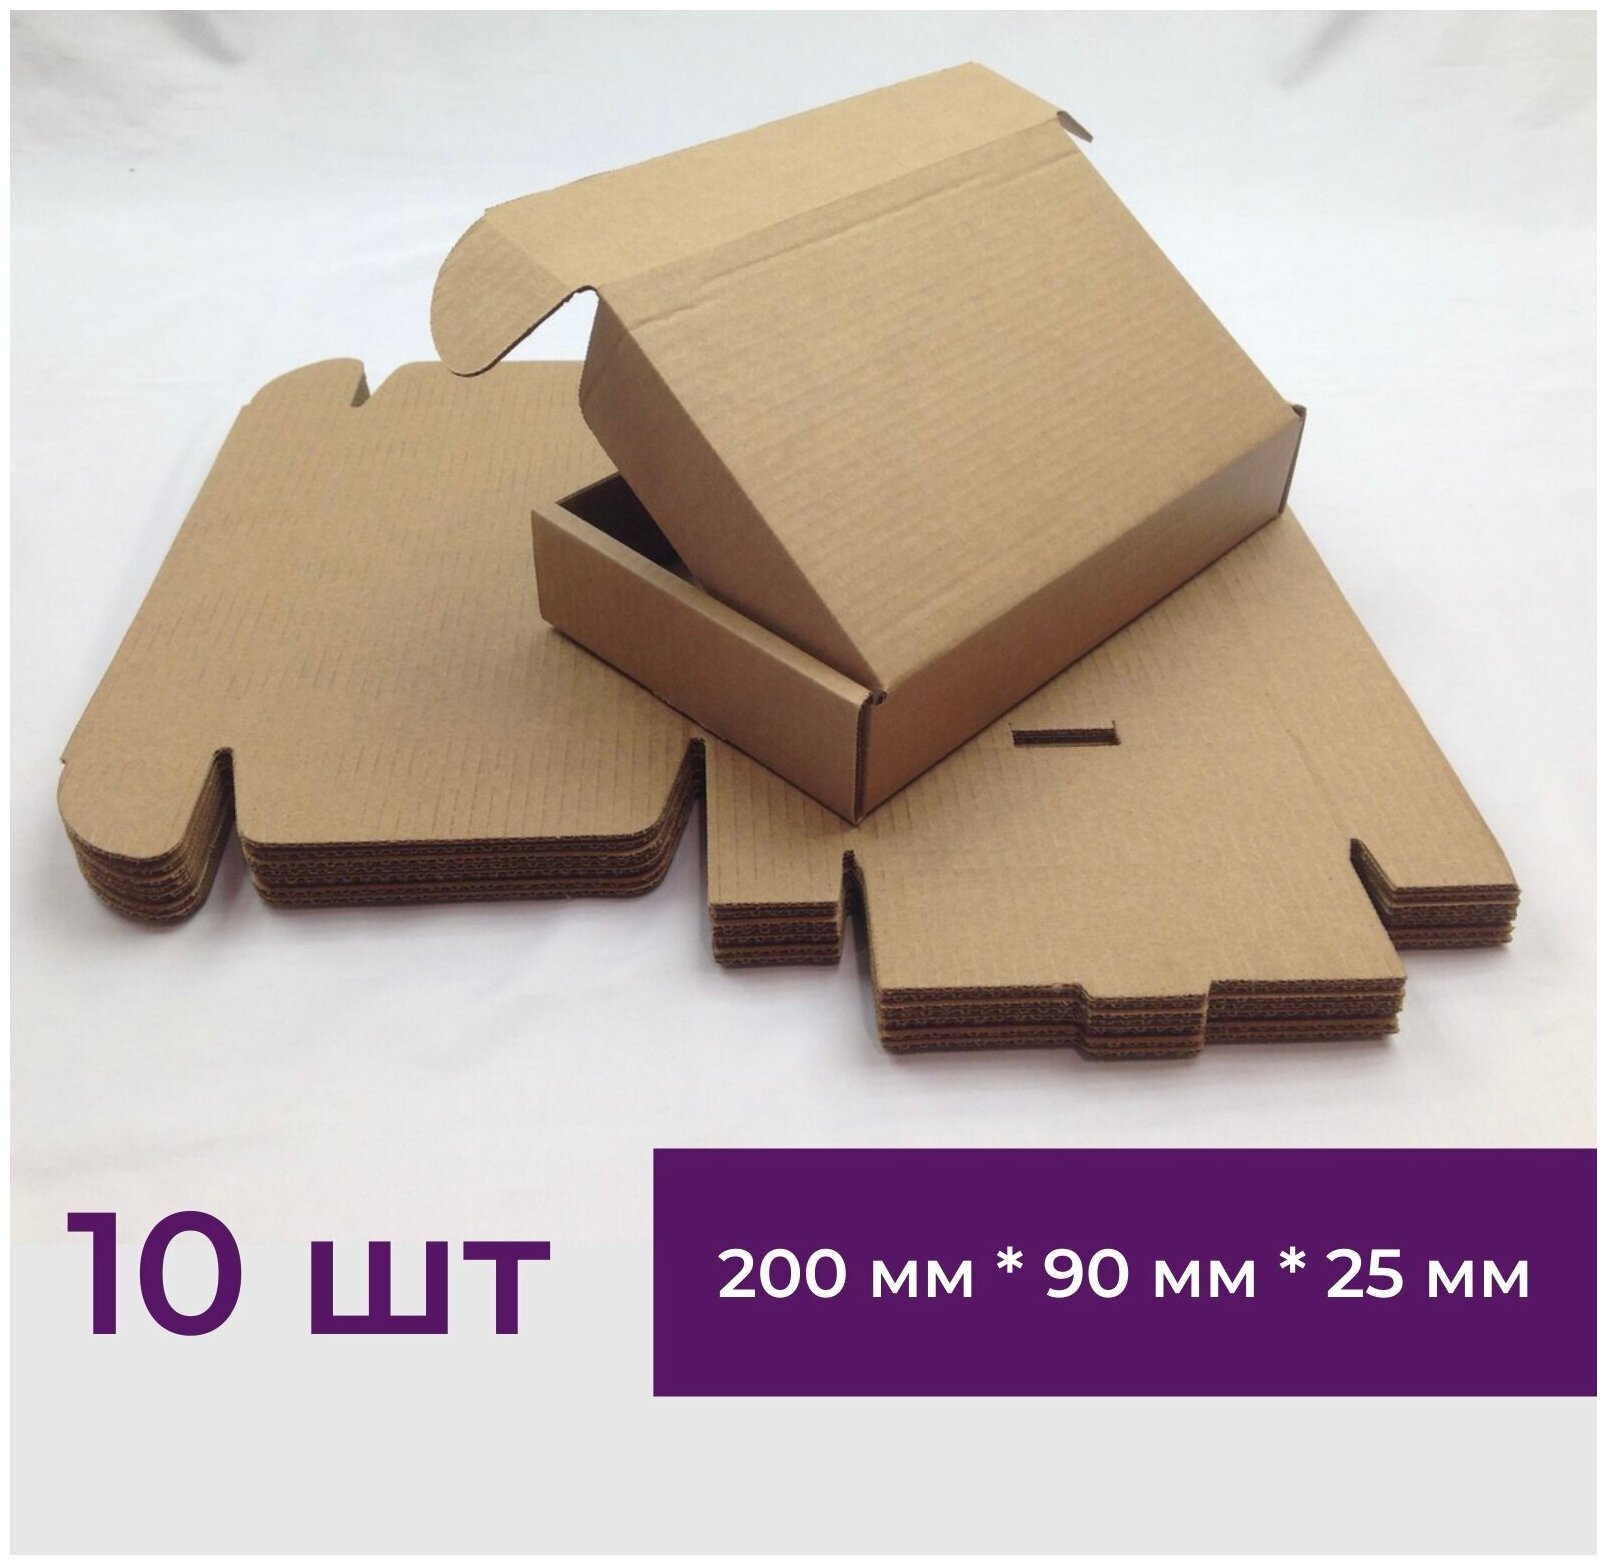 Самосборная картонная коробка из микрогофрокартона 200*90*25 мм Упаковка для товара 10 шт